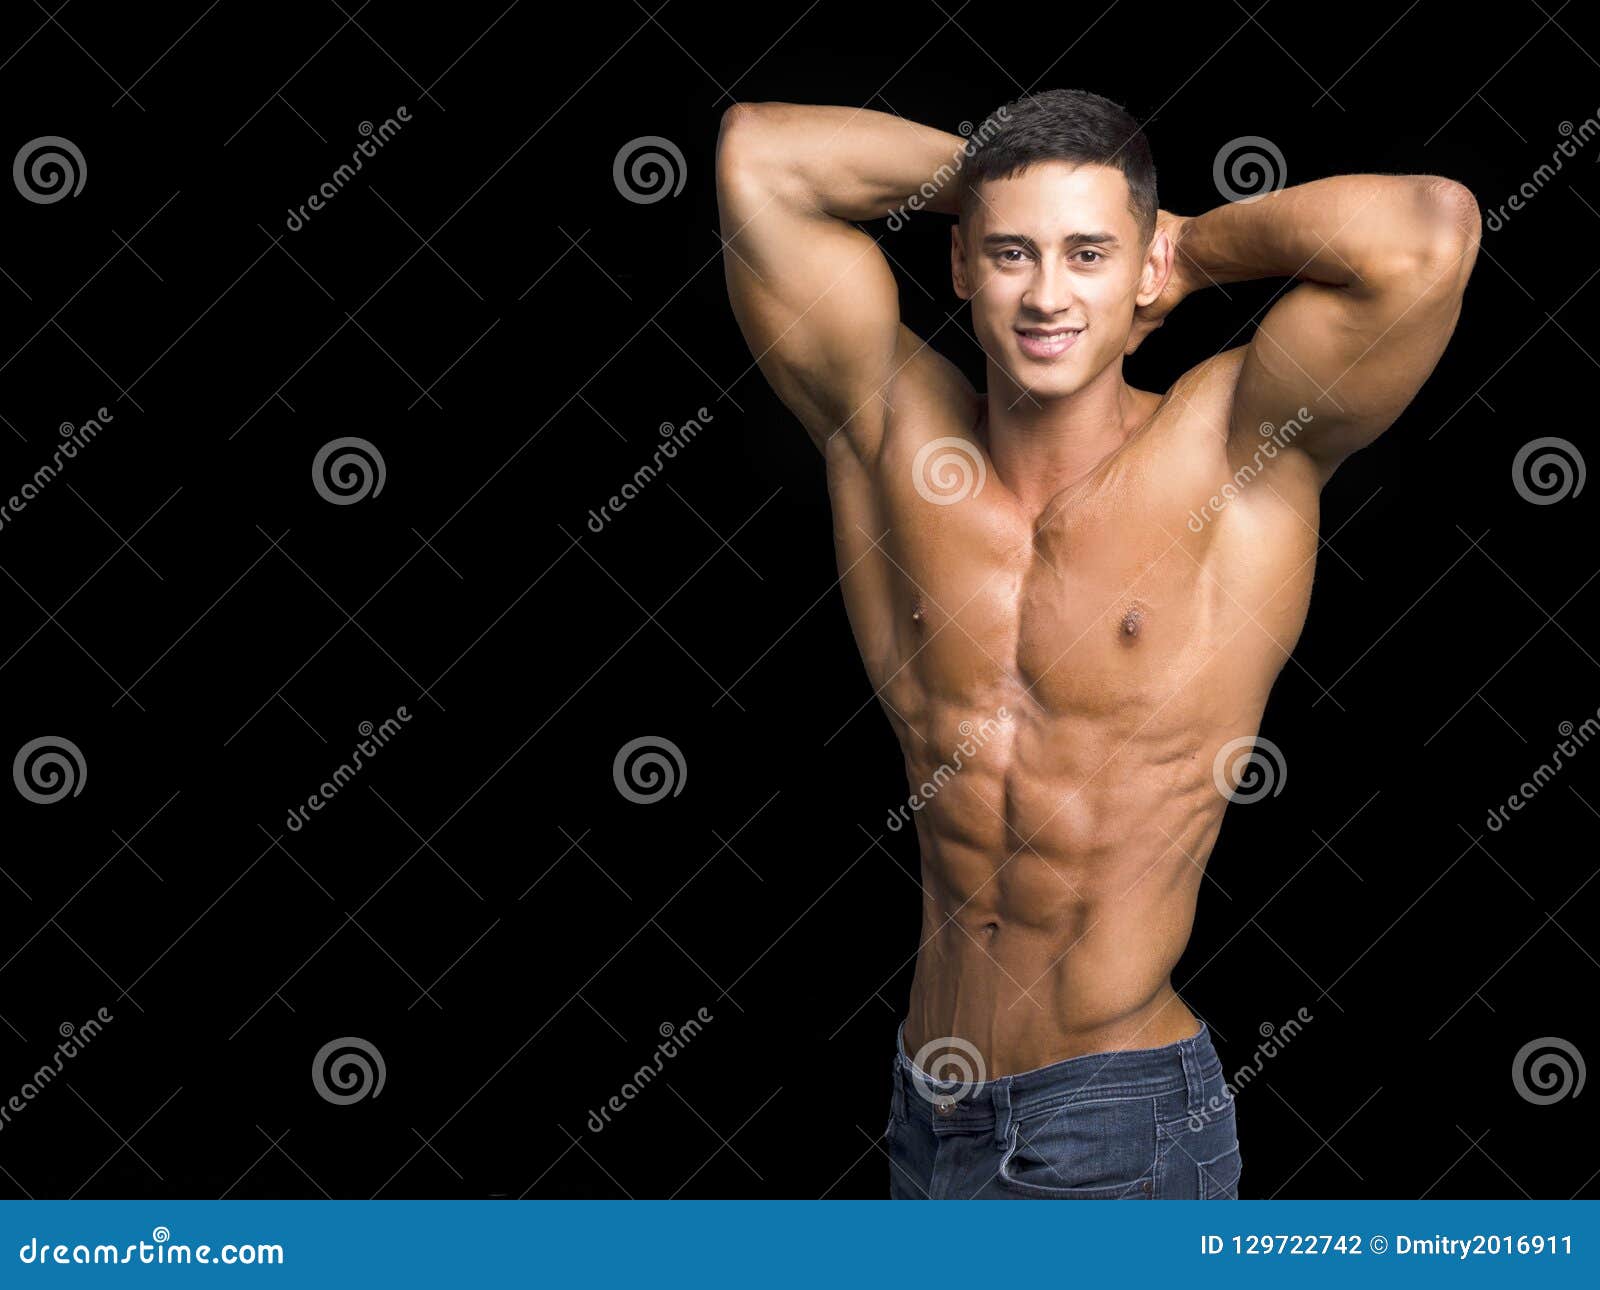 High Level Bodybuilder Posing Shirtless Stock Image 